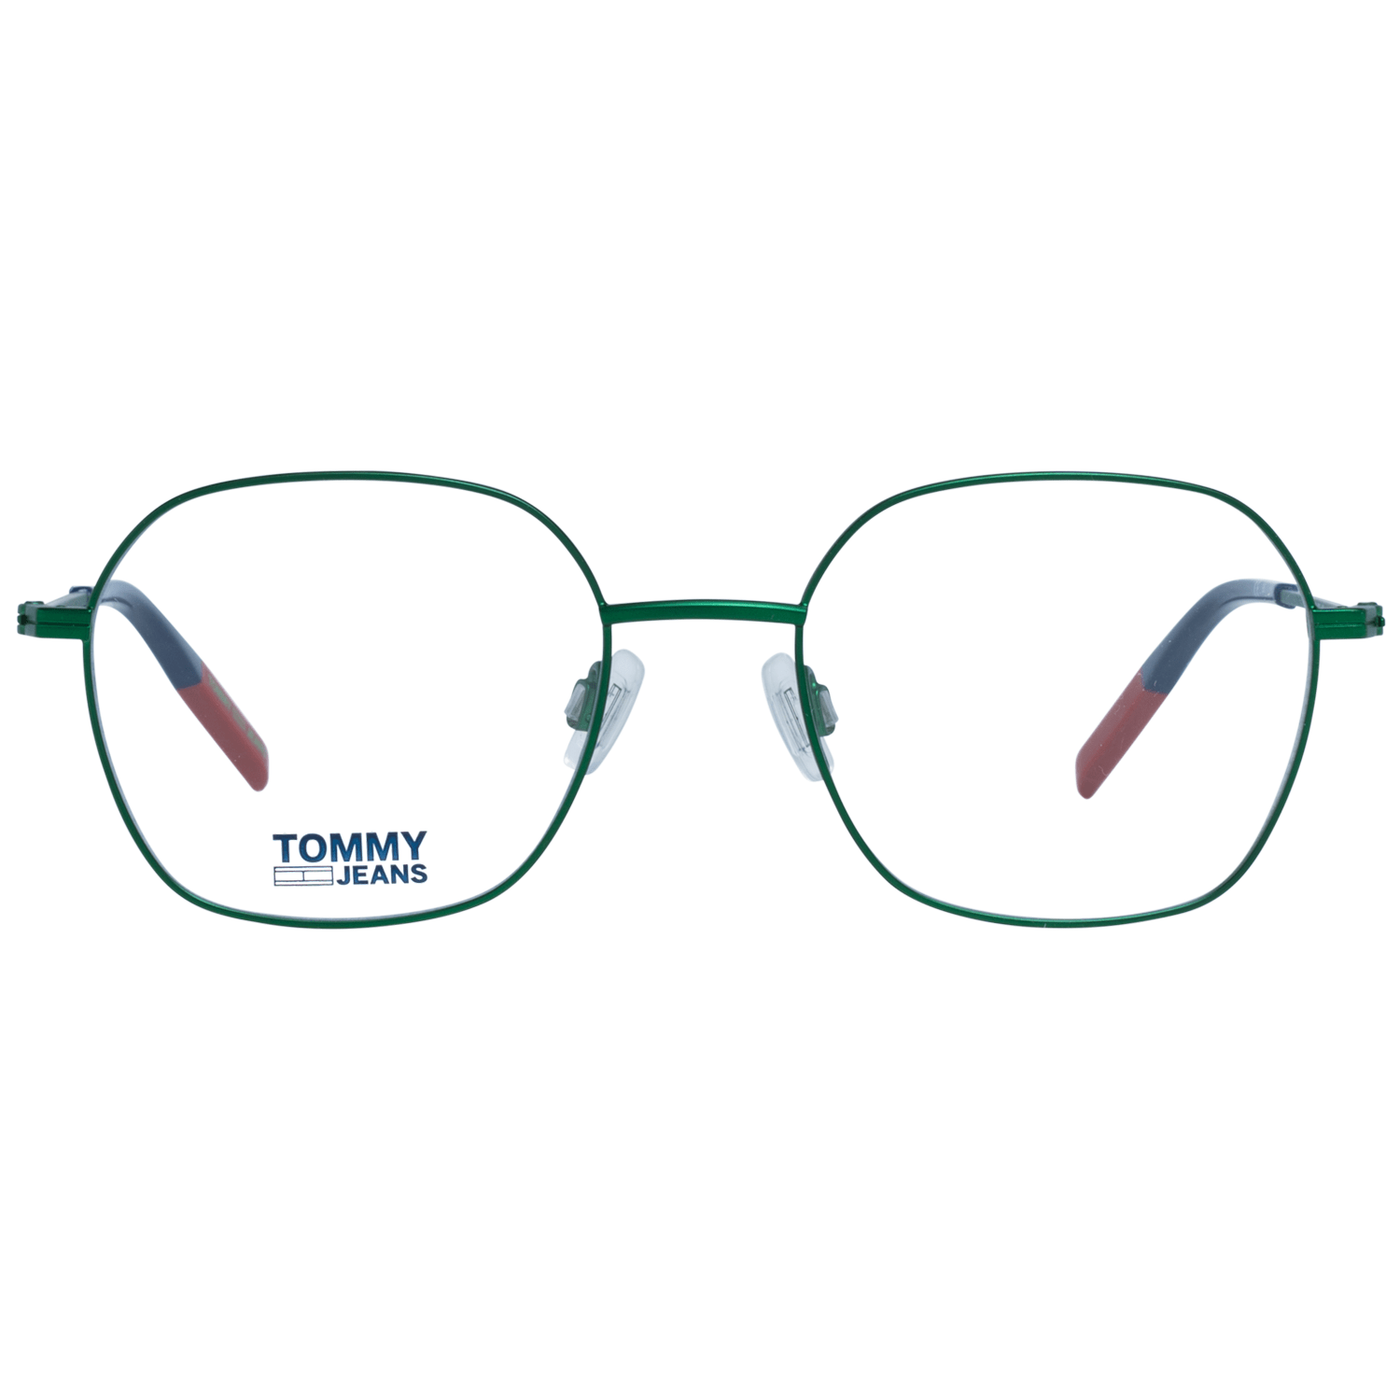 Tommy Hilfiger Green Unisex Optical Frames